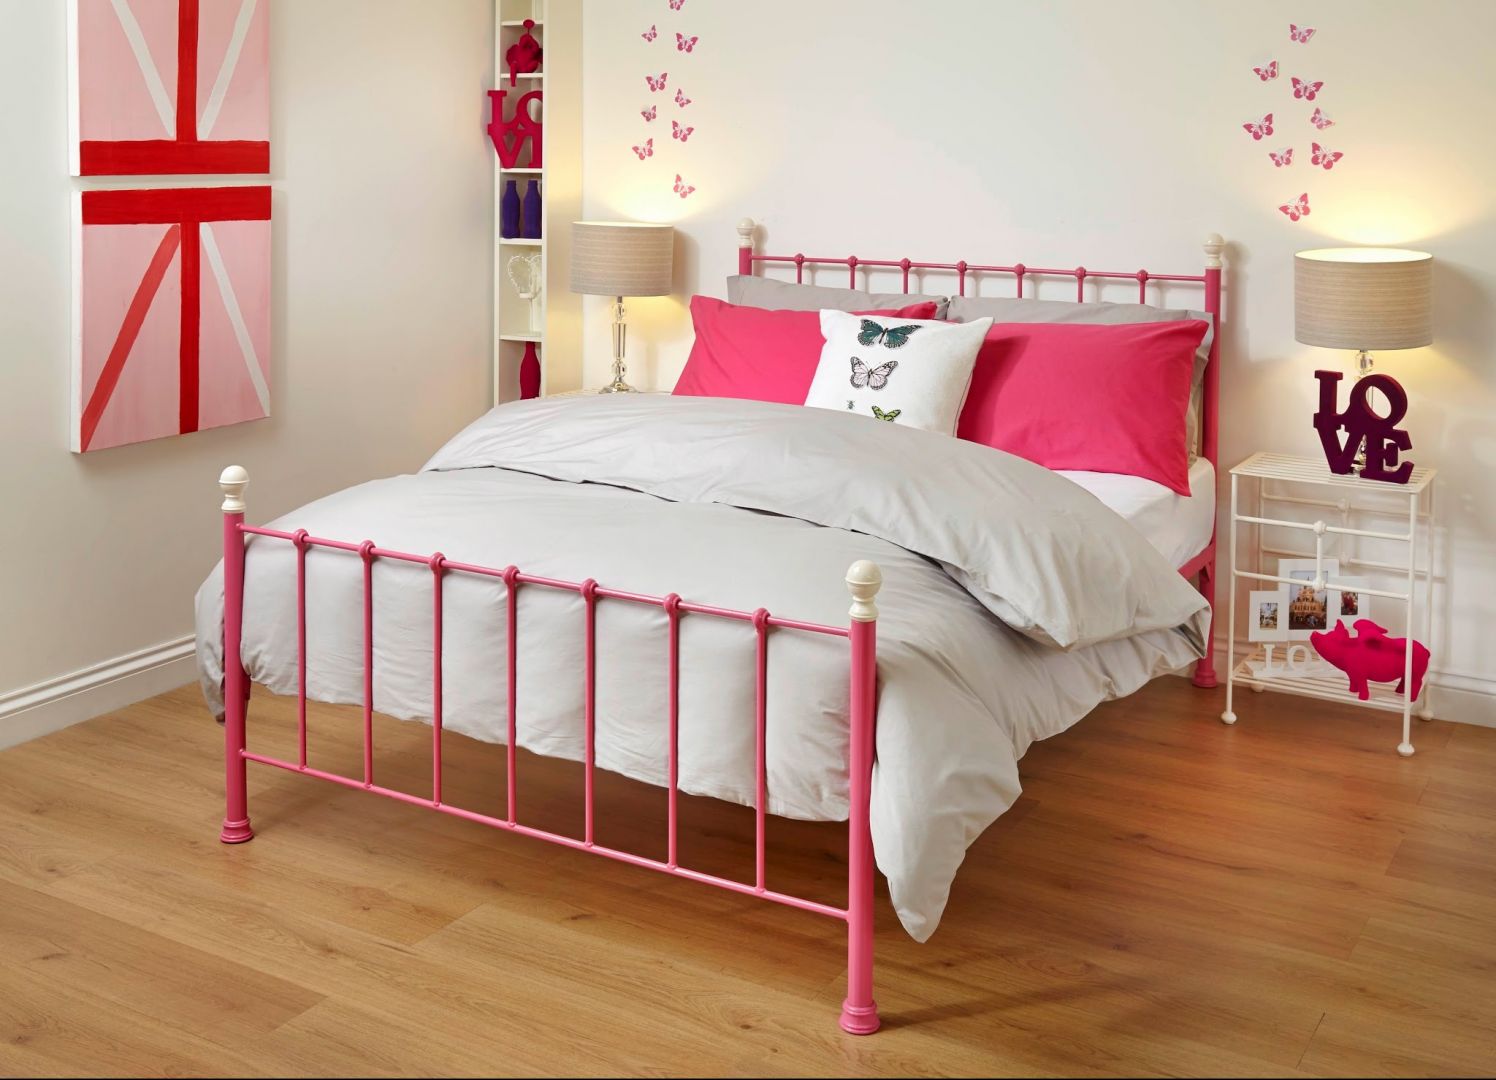 Większość kutych łóżek dostępnych jest w kolorach bieli i czerni. Bardziej odważna propozycja to mocny róż. Fot. Wrought Iron & Brass Bed Co